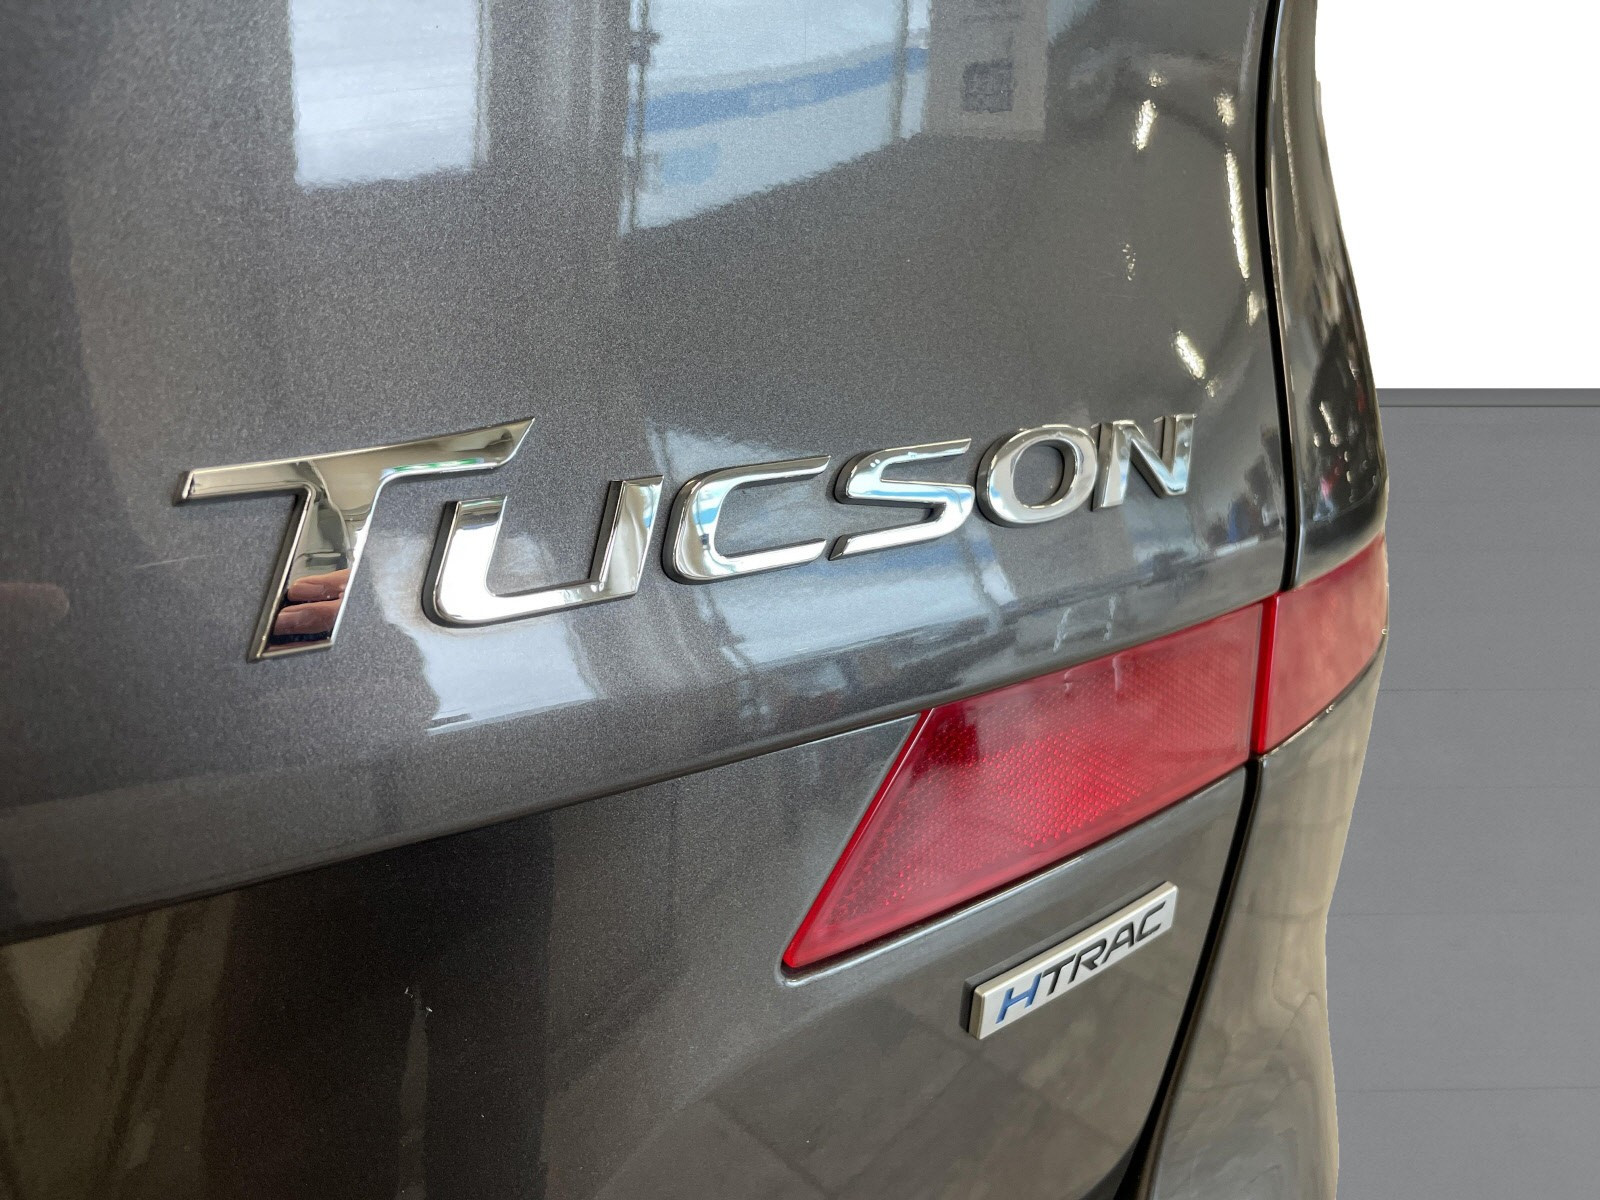 Tucson er en annerkjent og tradisjonsrik modell fra Hyundai.